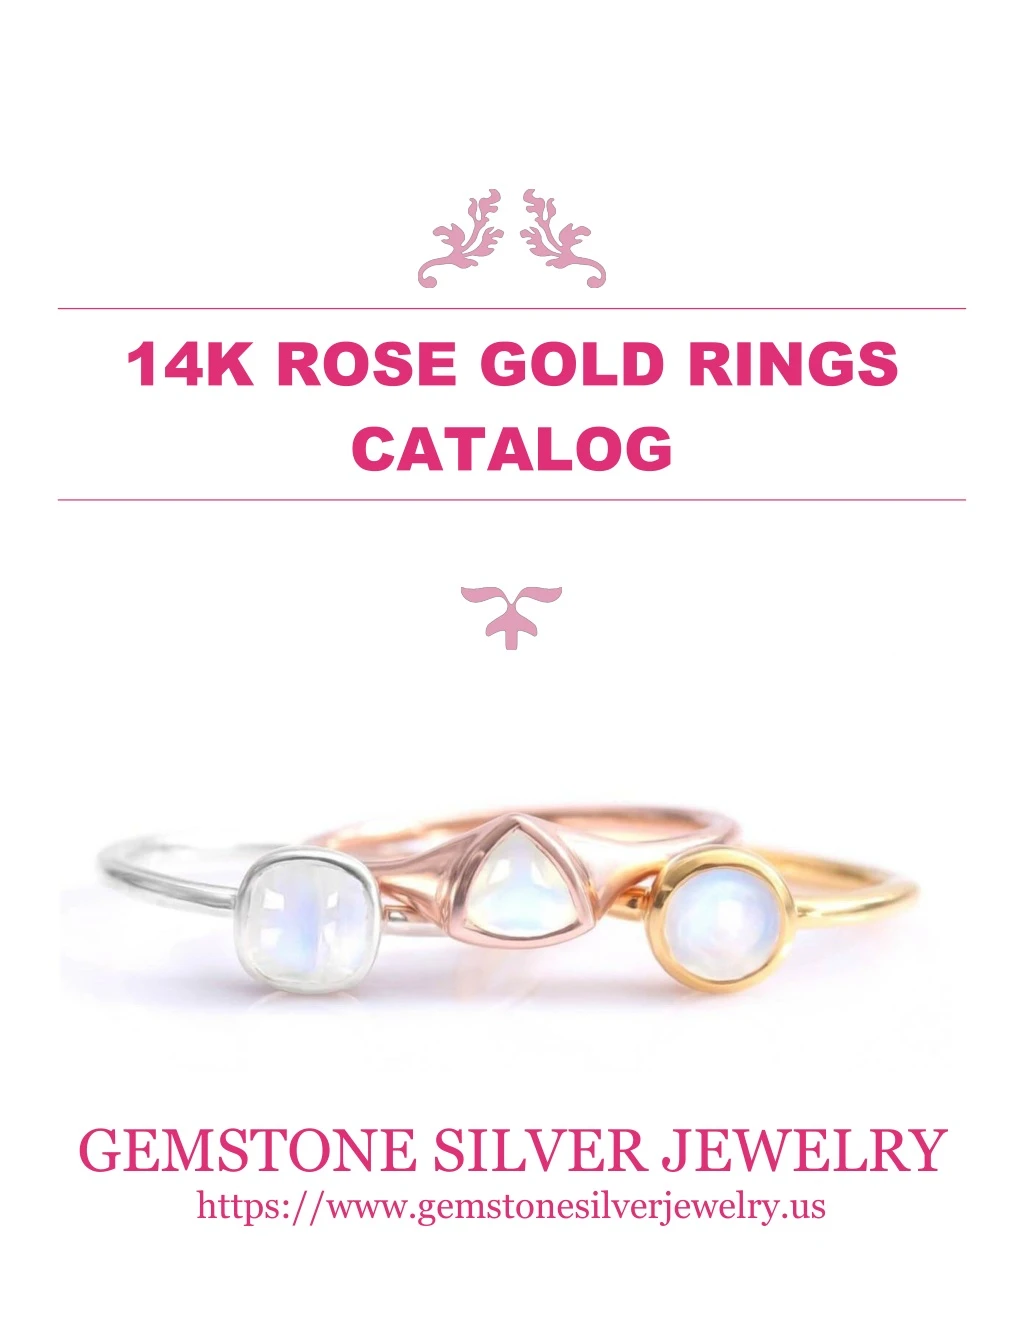 14k rose gold rings catalog